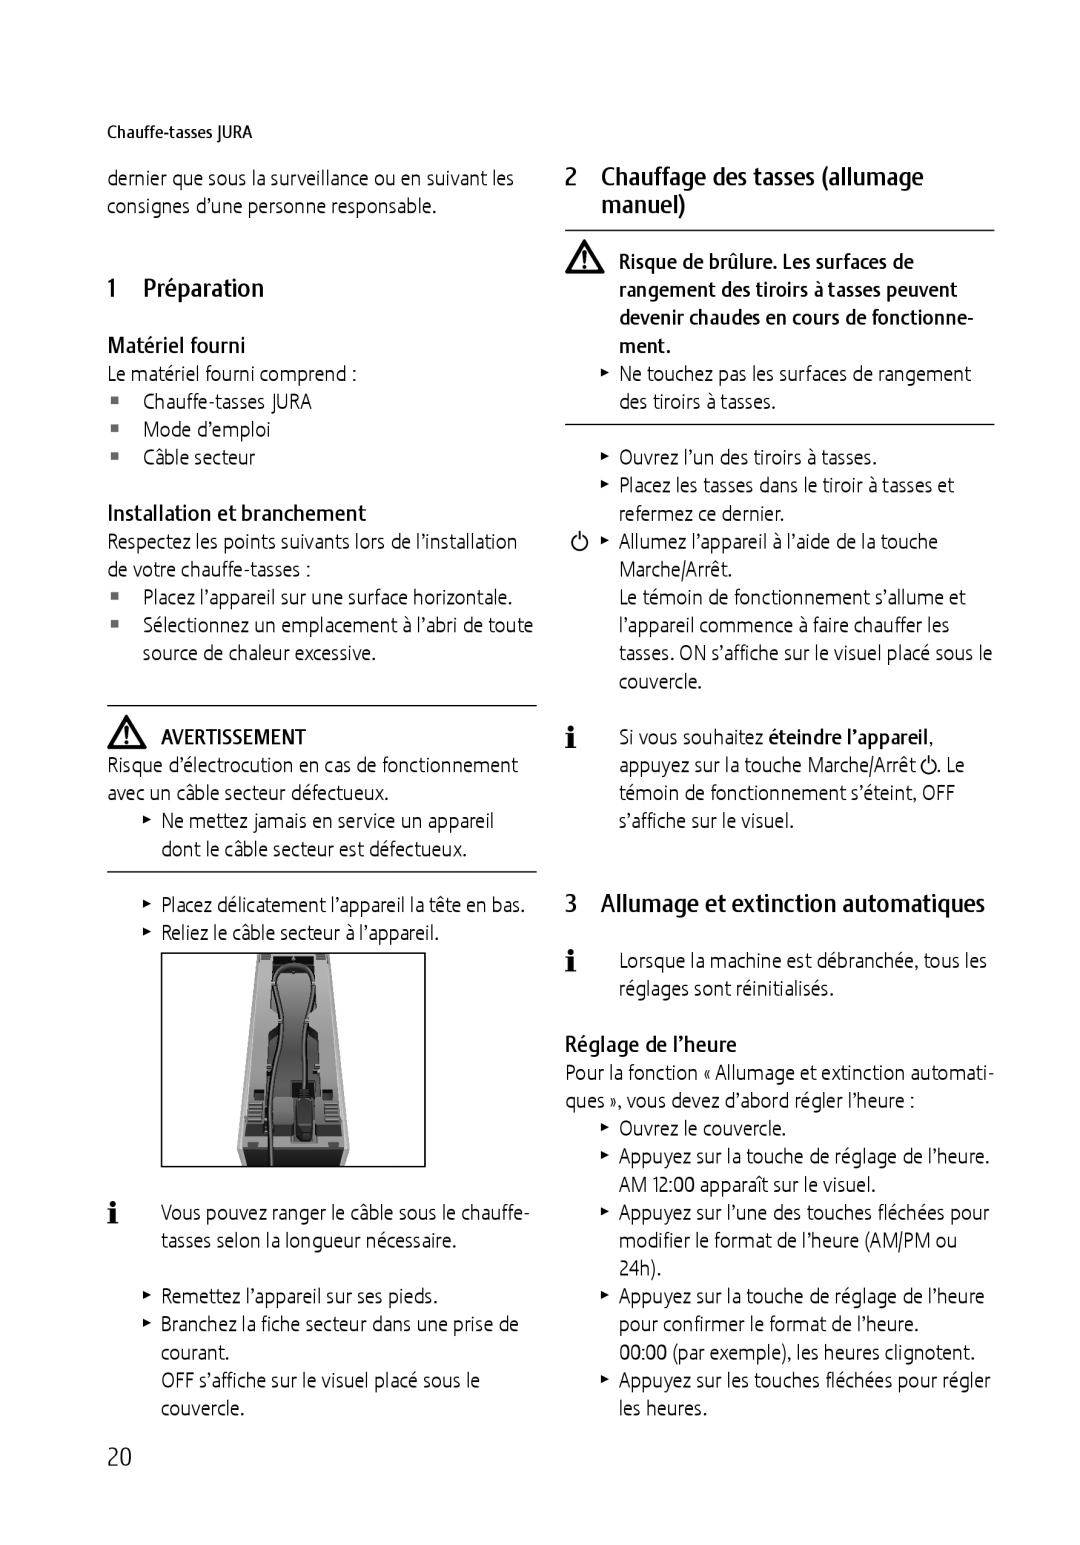 Jura Capresso 571 manual 1 Préparation, 2Chauffage des tasses allumage manuel, Allumage et extinction automatiques 